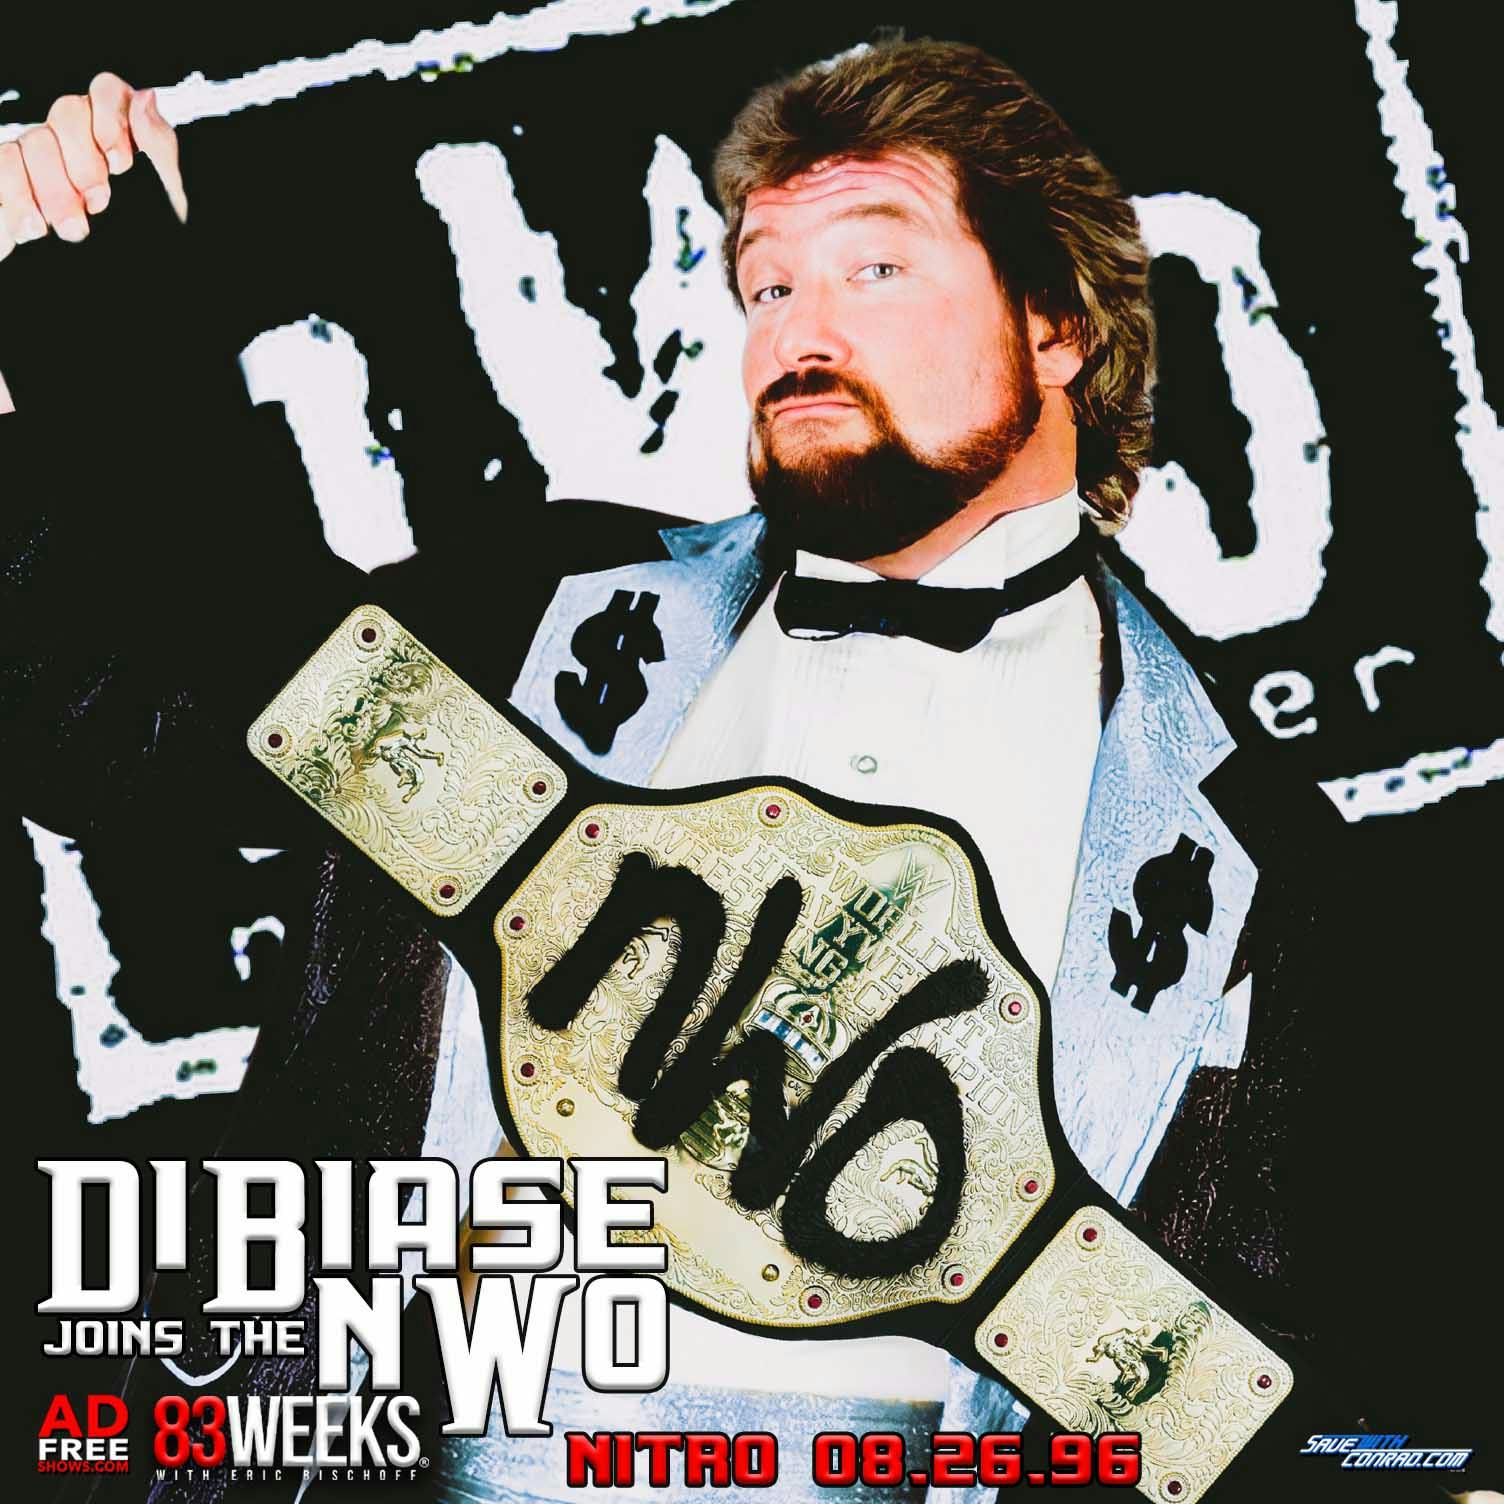 Episode 180: DiBiase Joins The NWO - NITRO 08.26.96